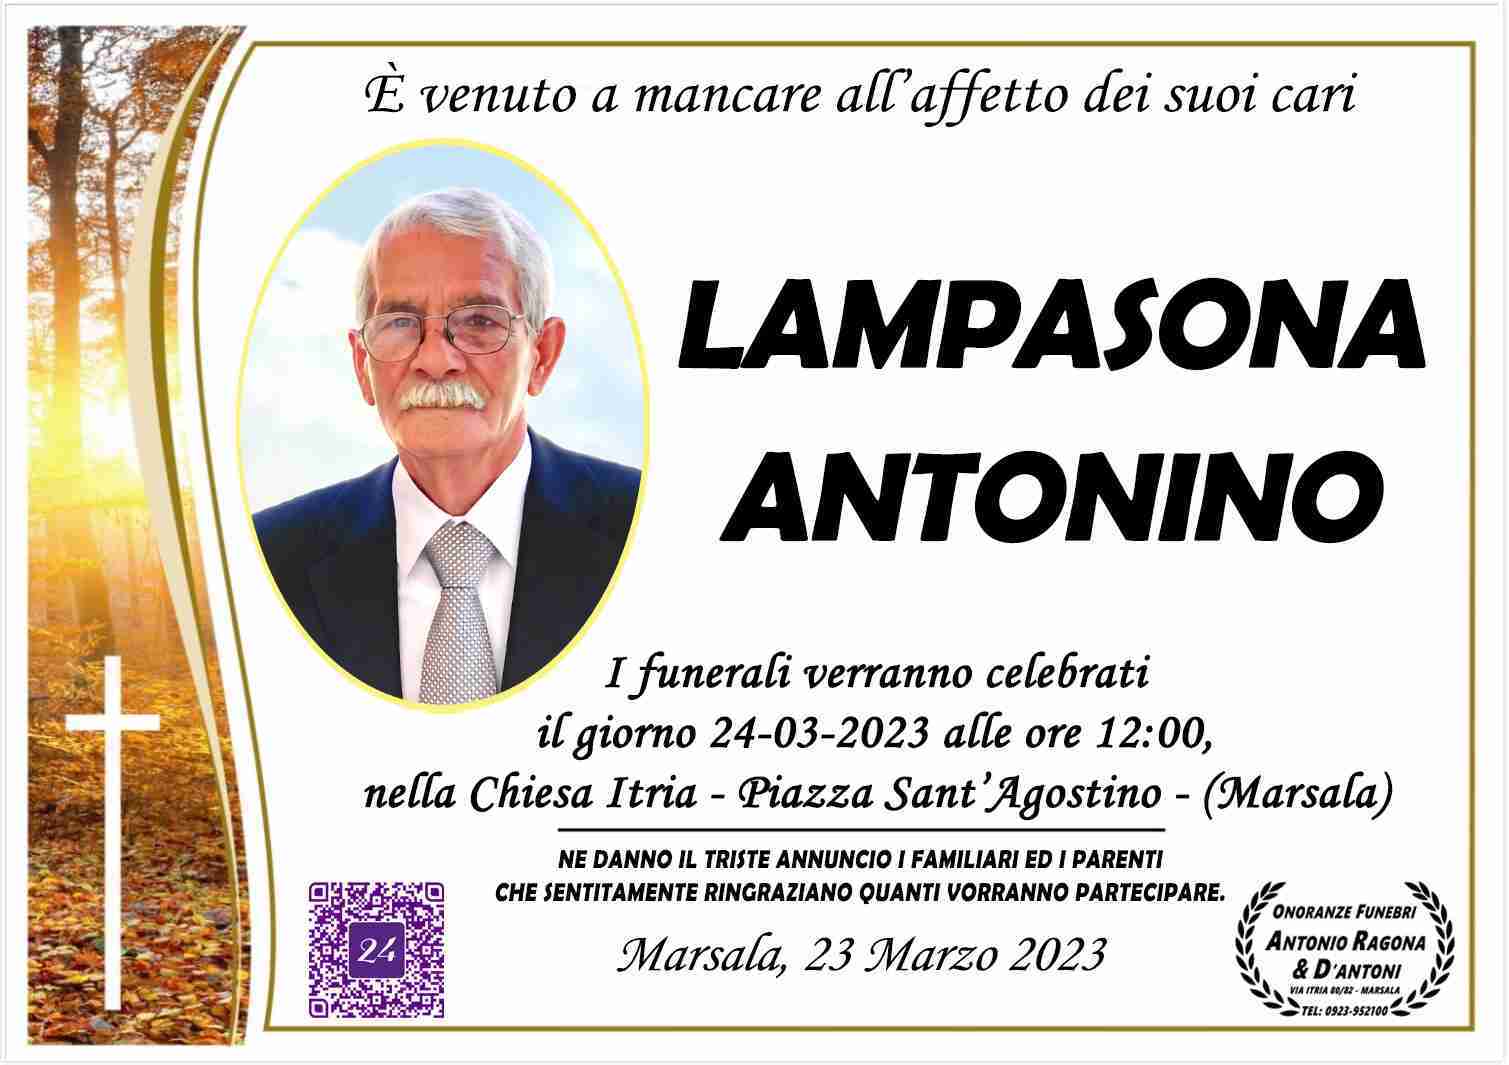 Antonino Lampasona